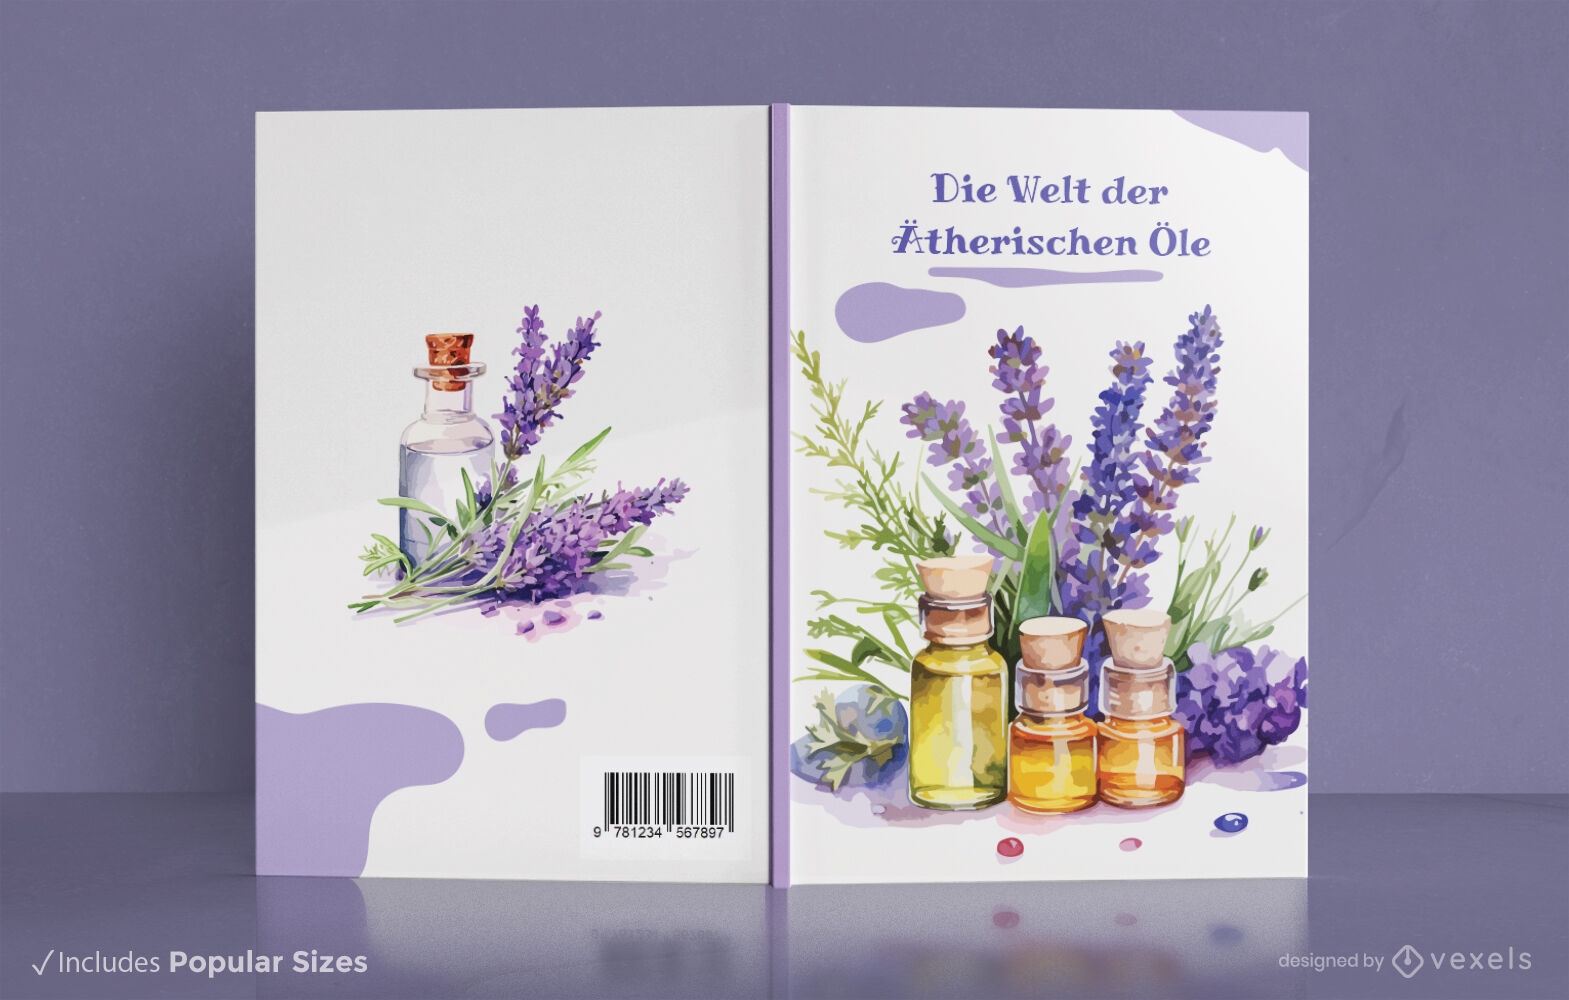 Diseño de portada de libro de aromaterapia.